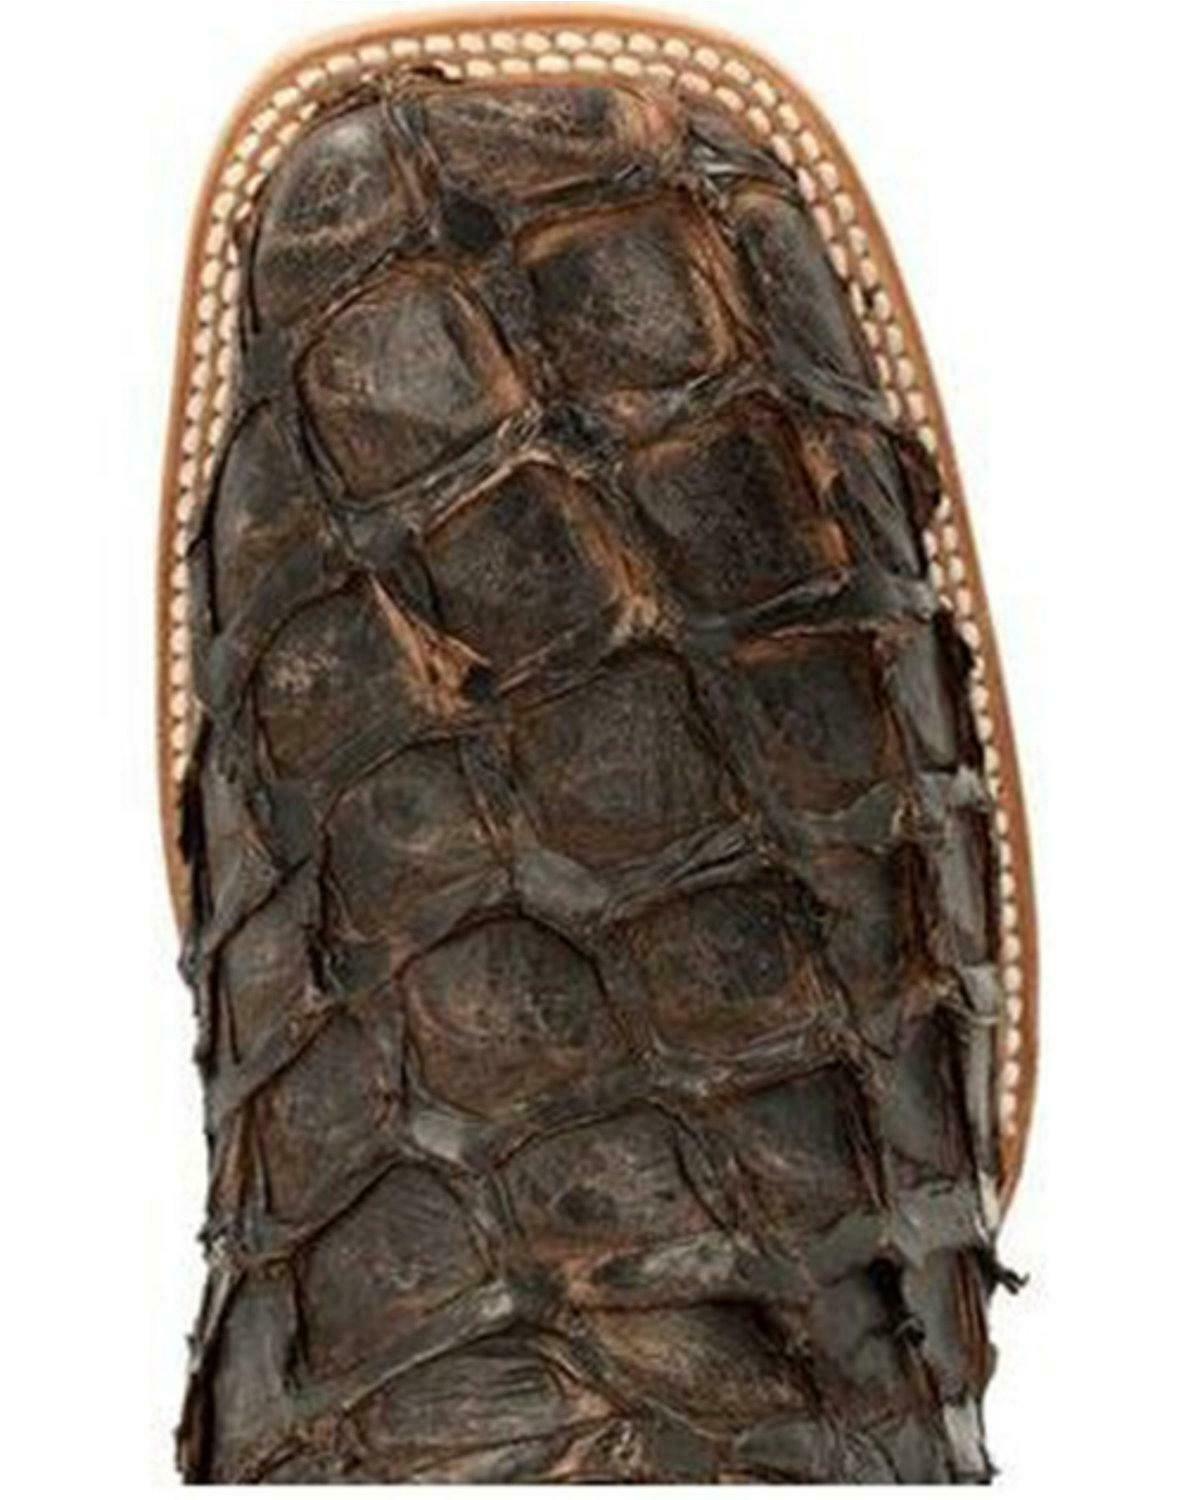 Durango Men's Exotic Pirarucu Skin Western Boot - Wide Square Toe - DDB0380